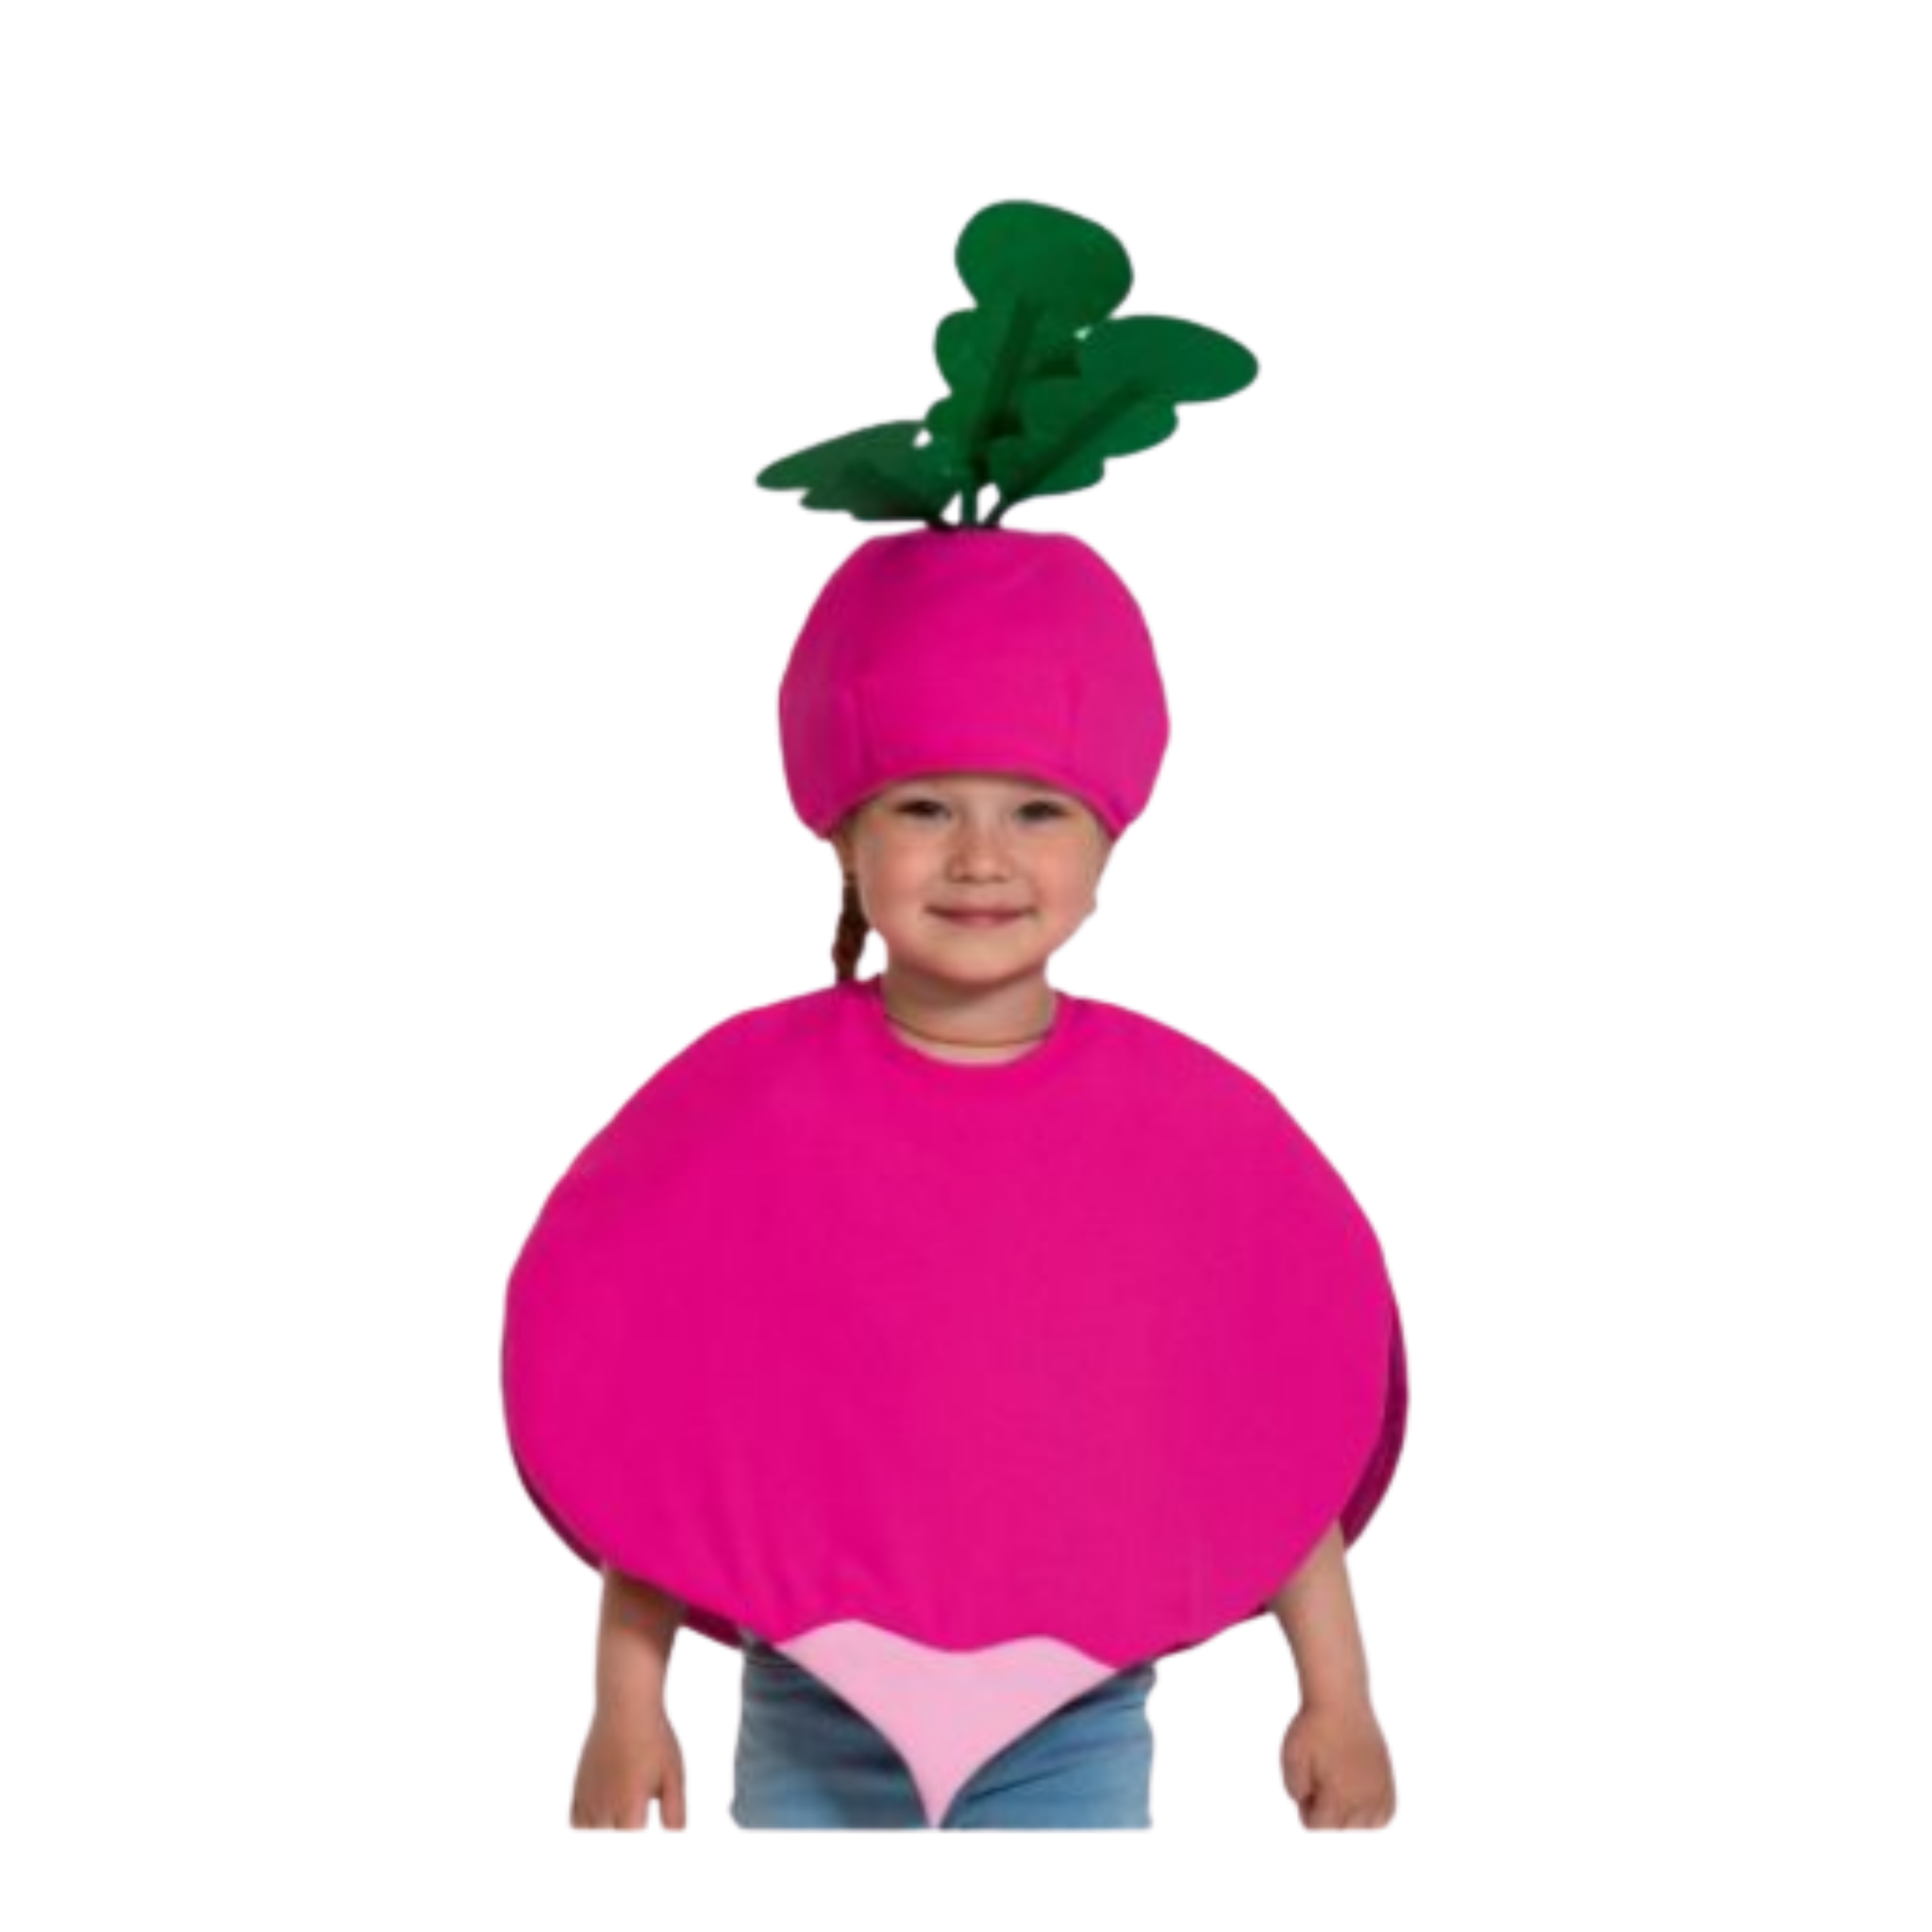 Костюм овоща. Костюмы овощей и фруктов для детей. Костюм редиски. Детский костюм редиски. Шапочка редиска.